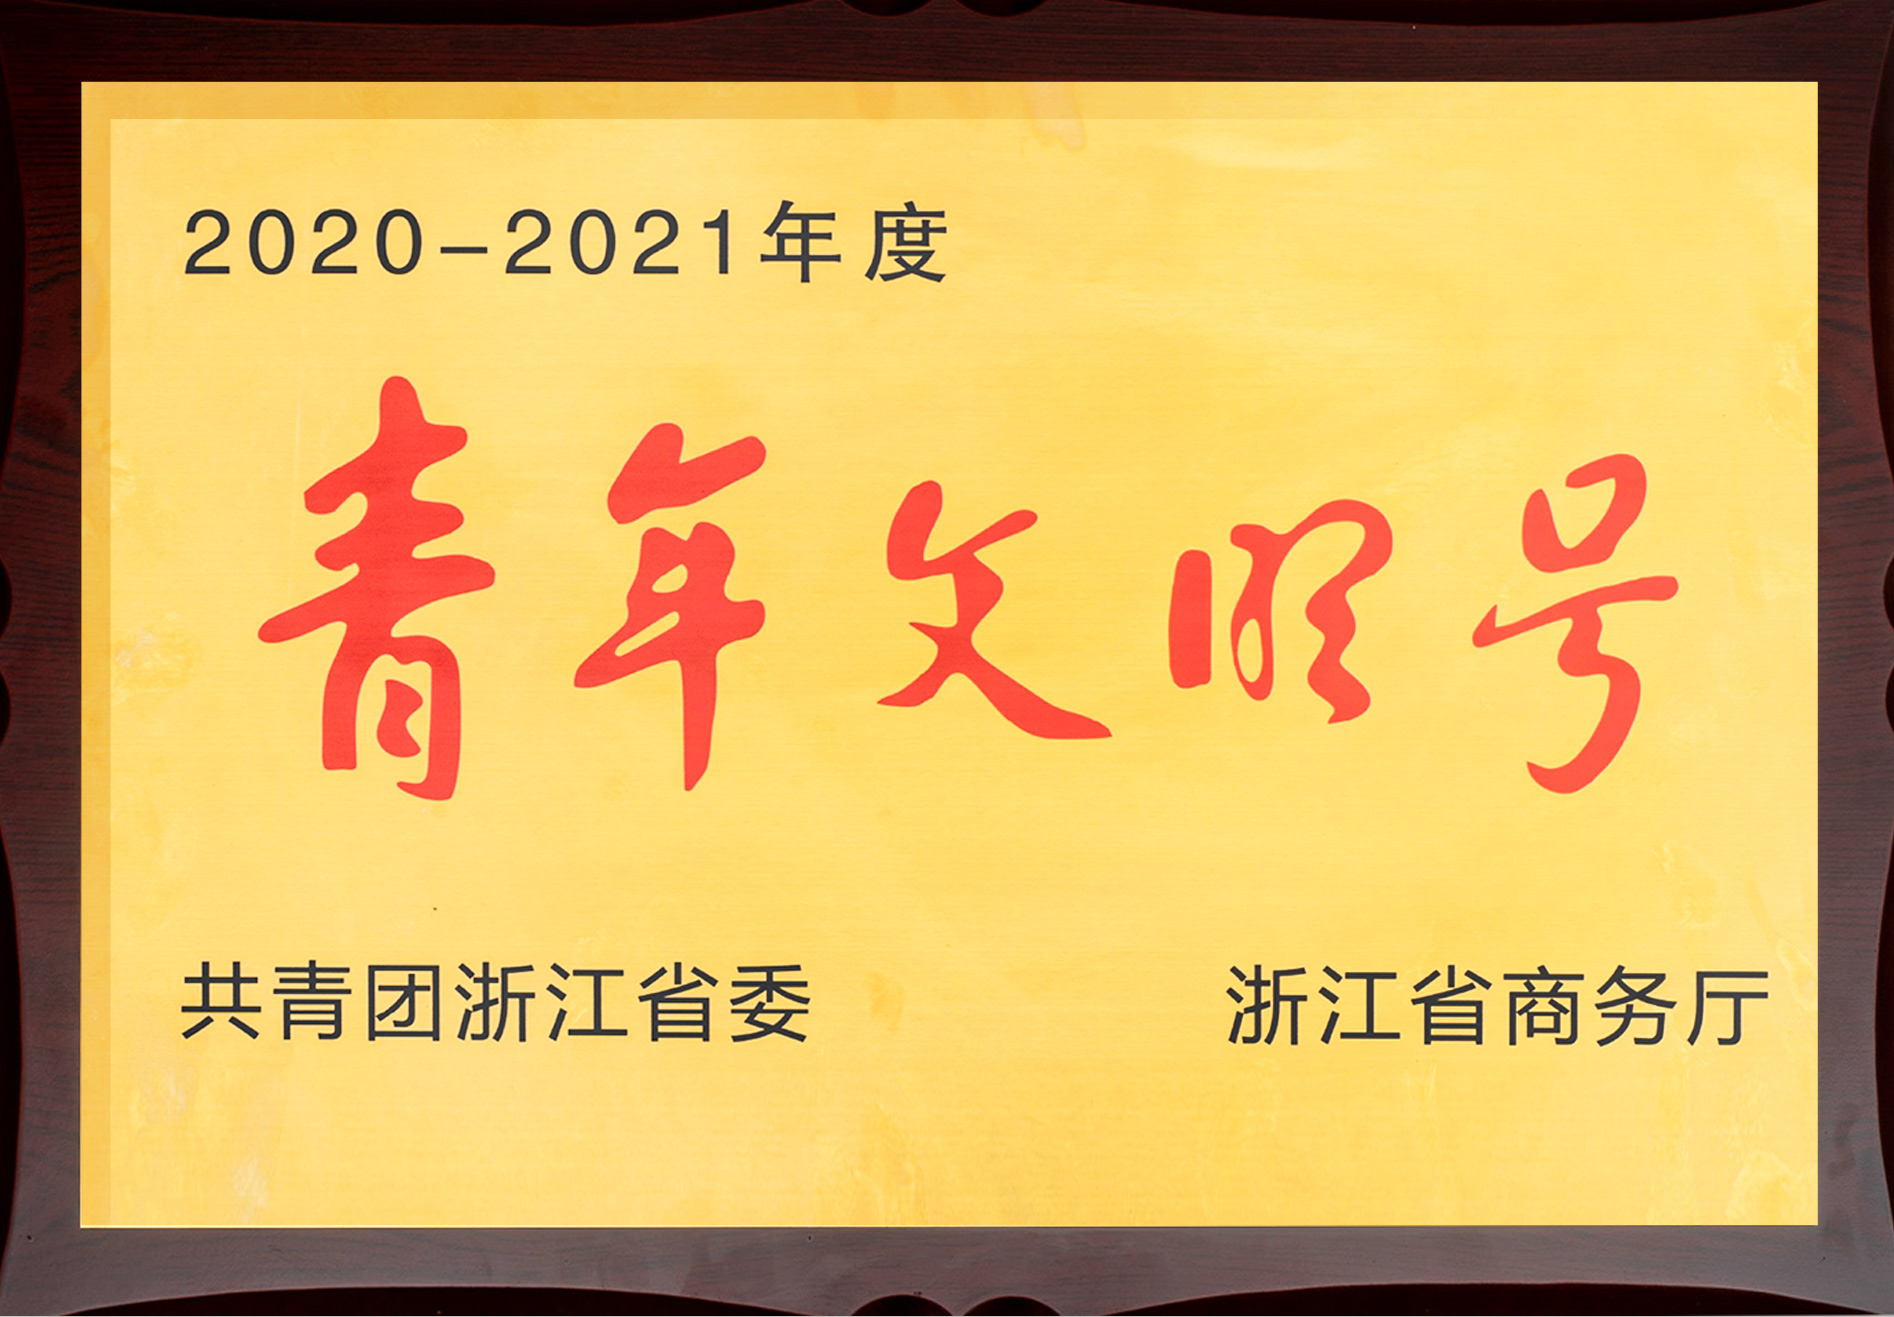 Ningshing Ubay won the Youth Civilization unit of Zhejiang Province!